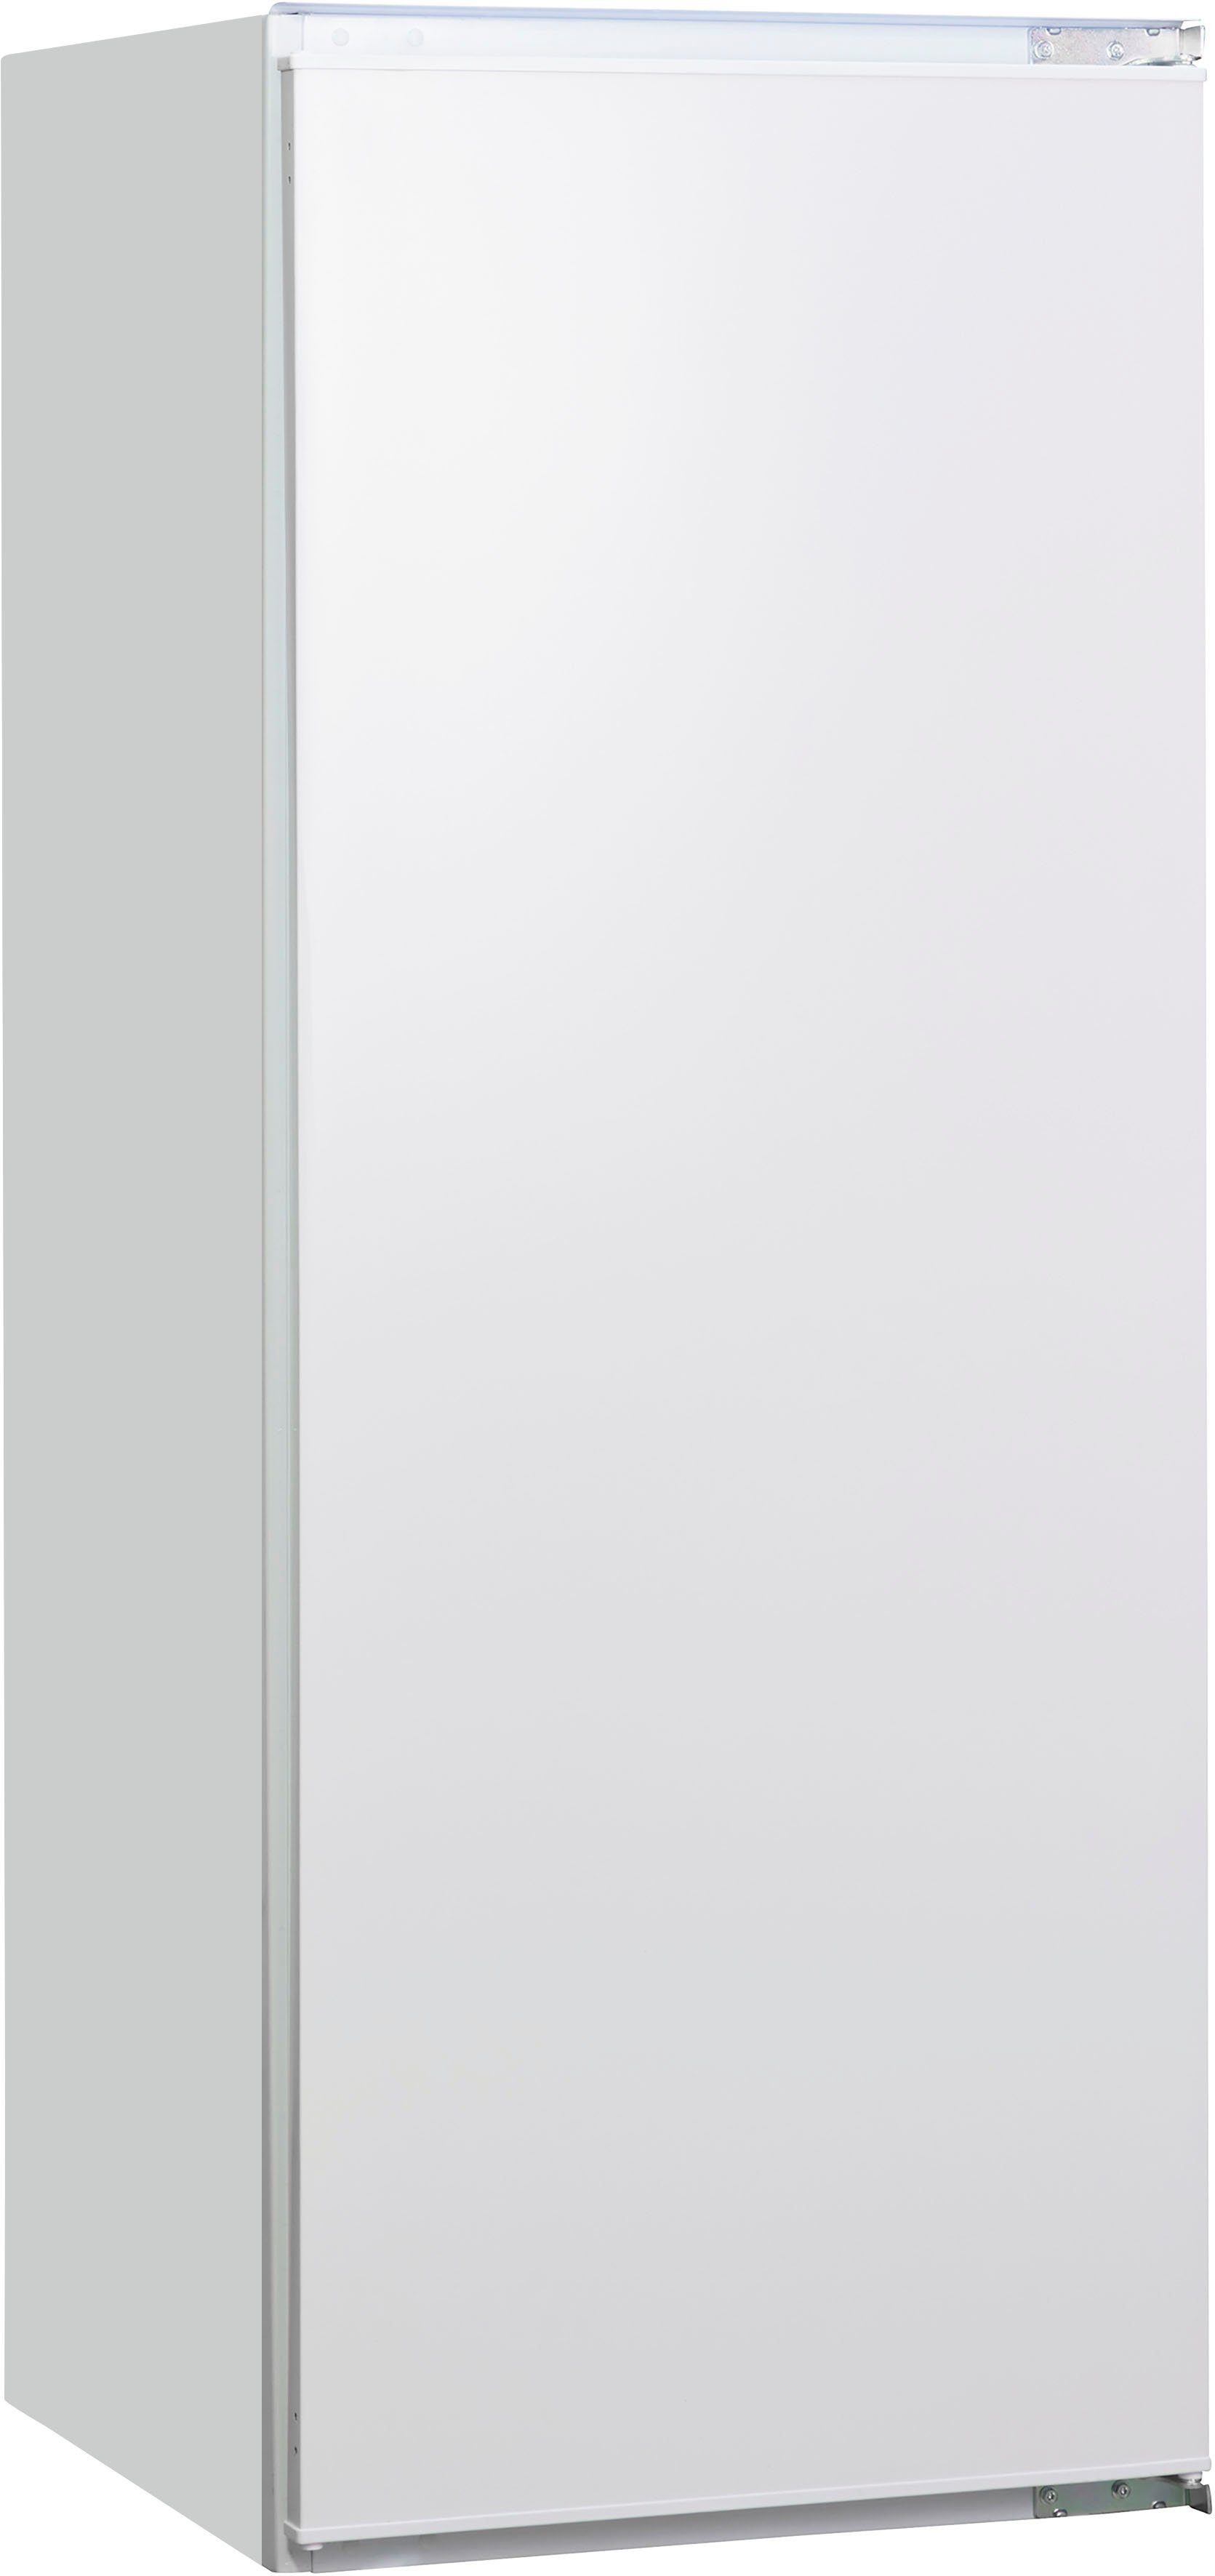 Amica Einbaukühlschrank EKSS 364 cm breit 200, 54 cm hoch, 139,7